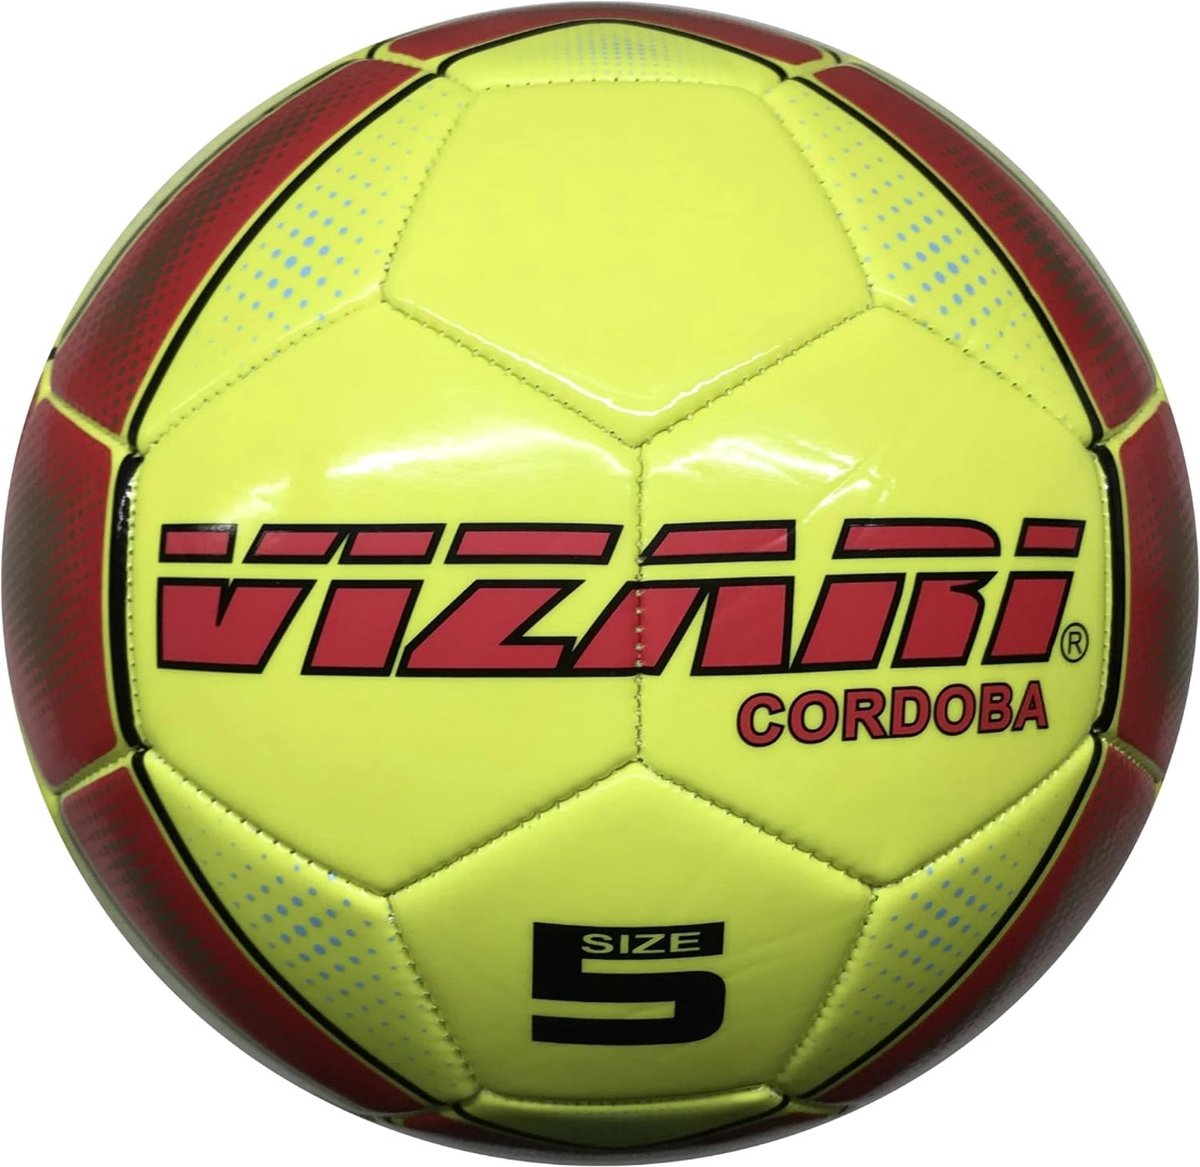 VIZARI CORDOBA Voetbal | Geel/Neon | Maat 4 | Unieke Grafische Ontwerpen | Voetballen voor Kinderen & Volwassenen | Verkrijgbaar in 5 Kleuren